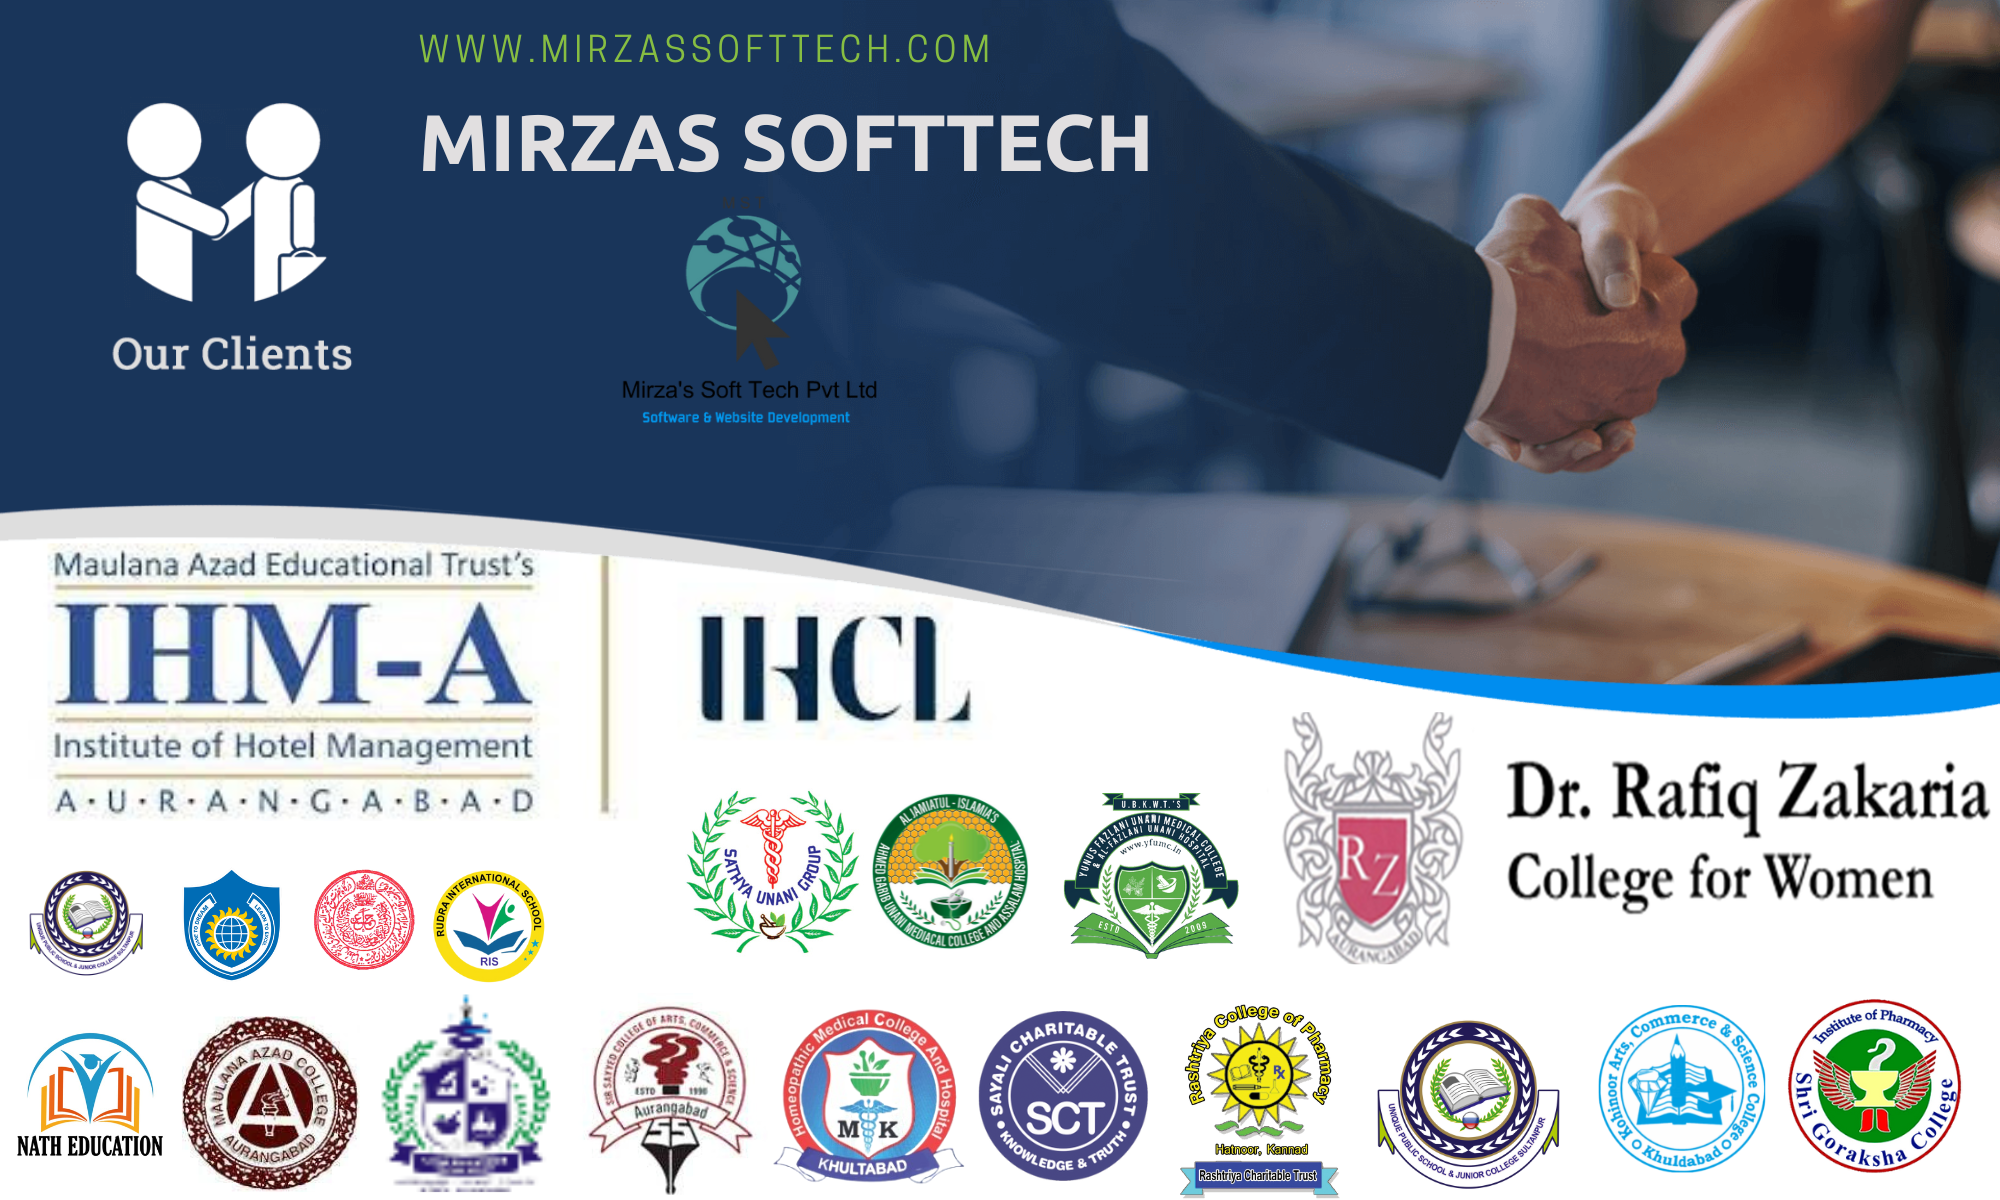 Mirzas Softtech Clients